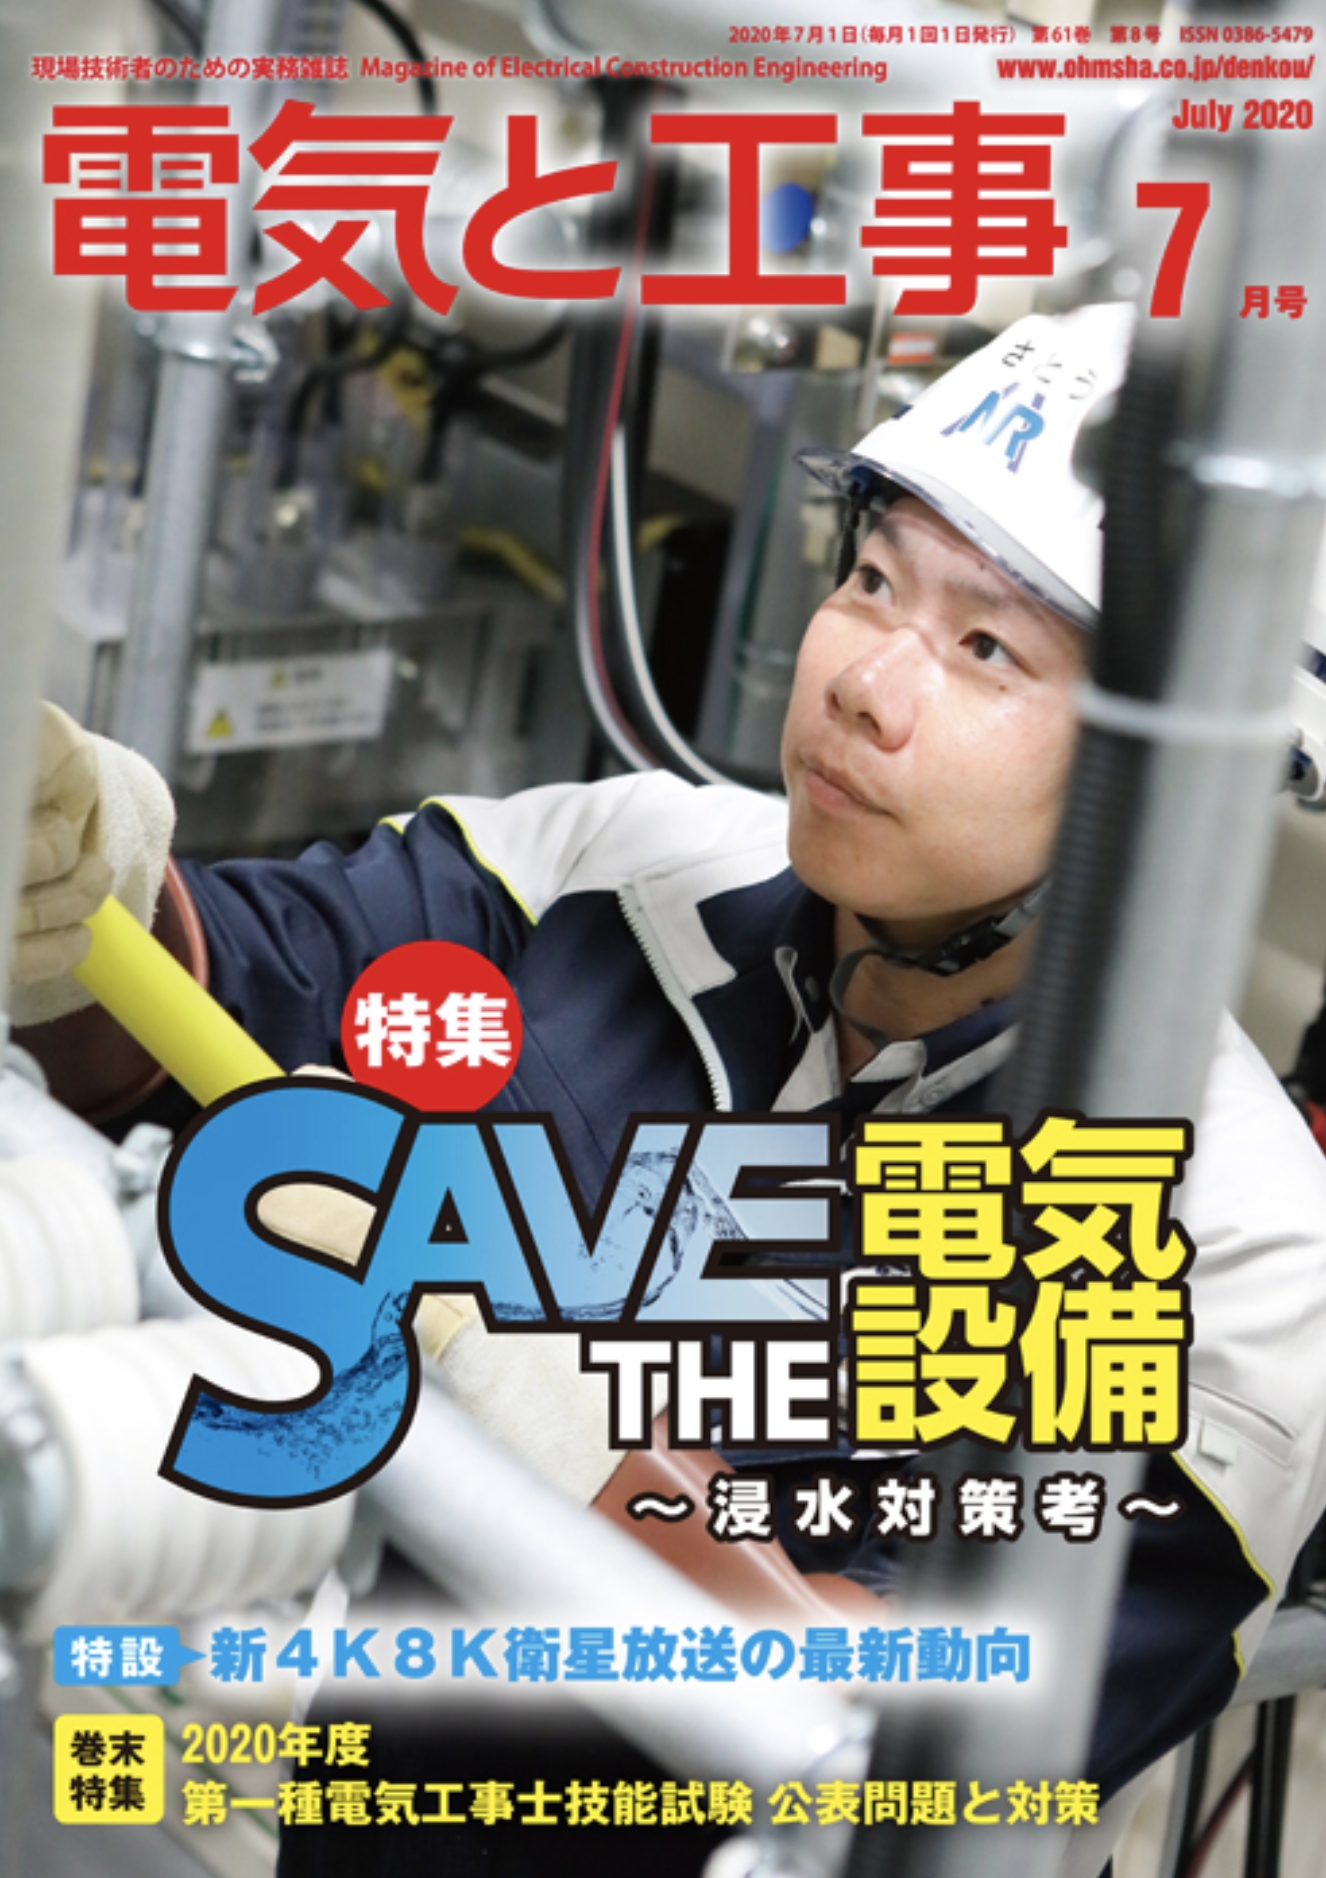 【新刊トピックス 2020年6月】電気と工事 2020年7月号 (第61巻第8号通巻802号)の画像